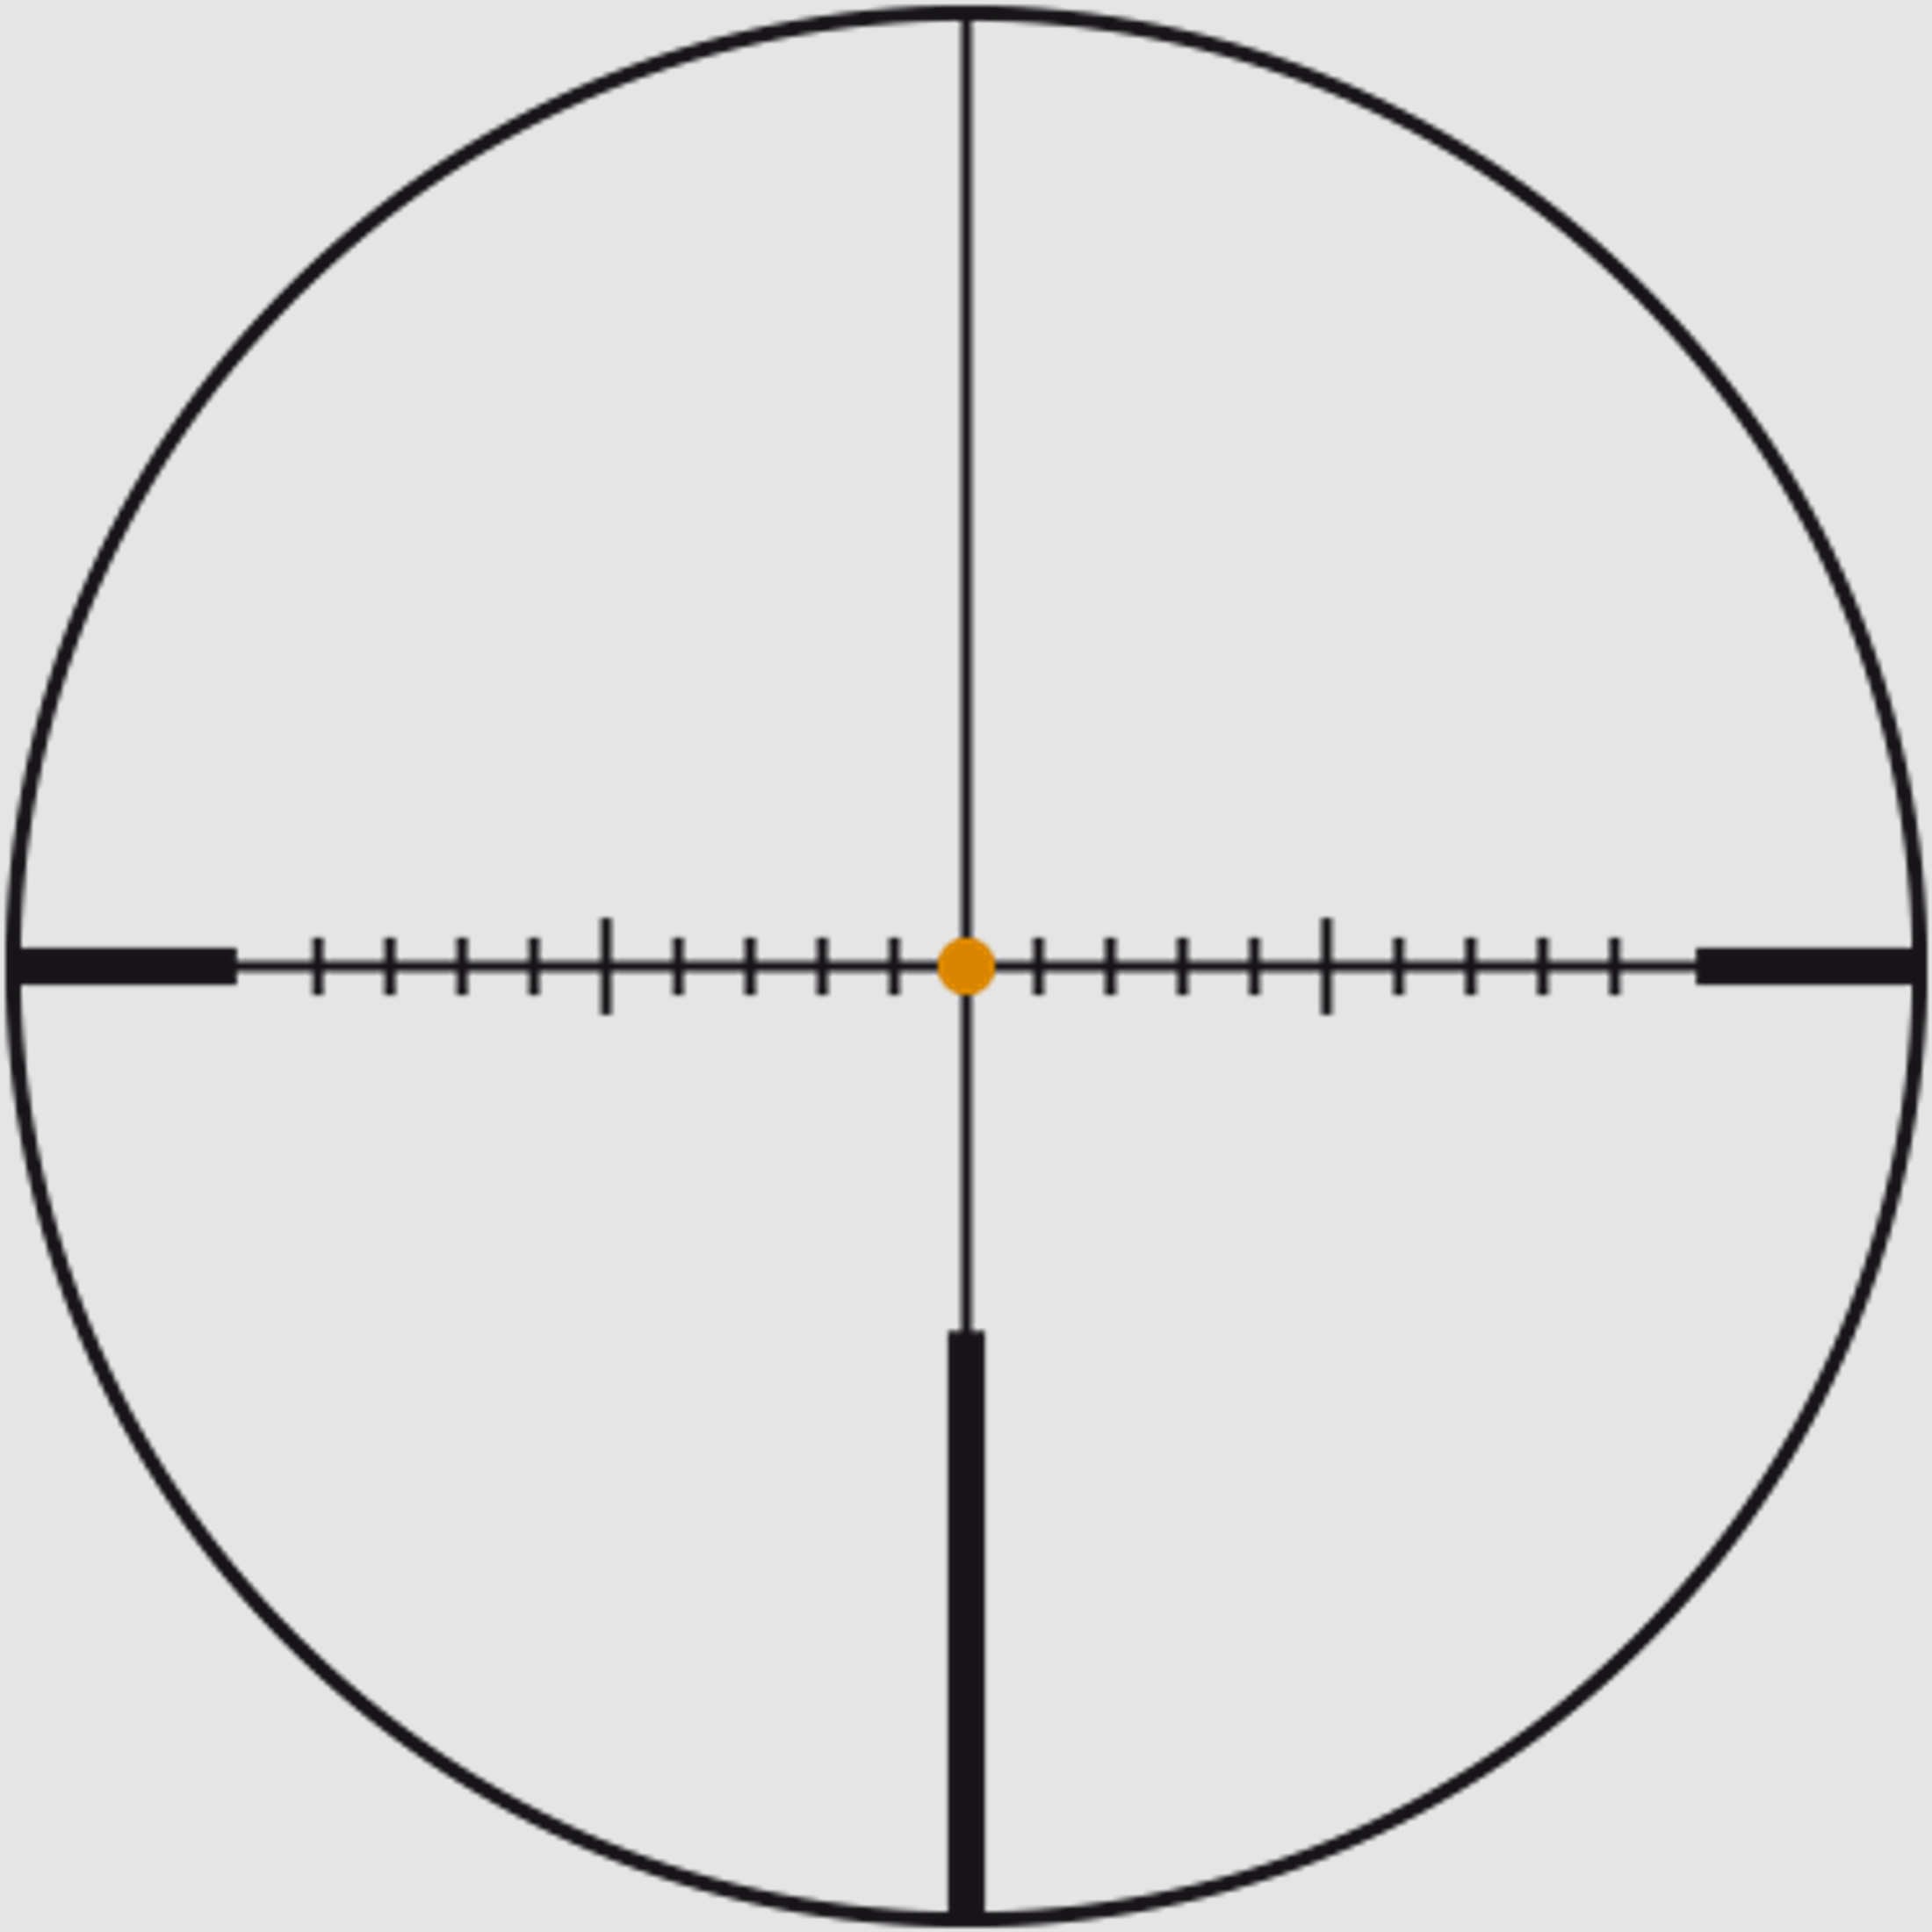 SWAROVSKI Zielfernrohr mit Leuchtabsehen 3,5-28x50 P Z8i SR Abs. 4A-I/4W-I